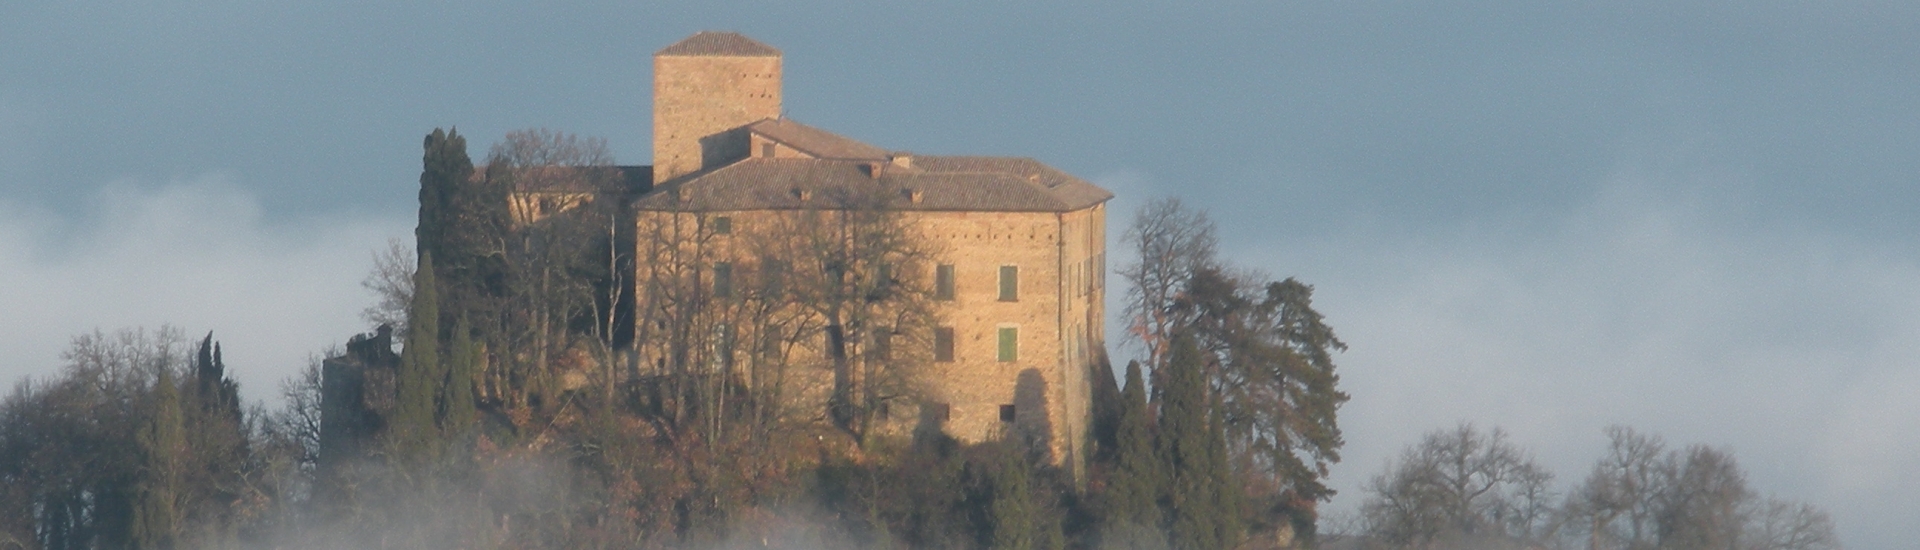 Castello di Bianello - Castle in the fog photo credits: |Reverberi Claudio| - Archivio fotografico del castello